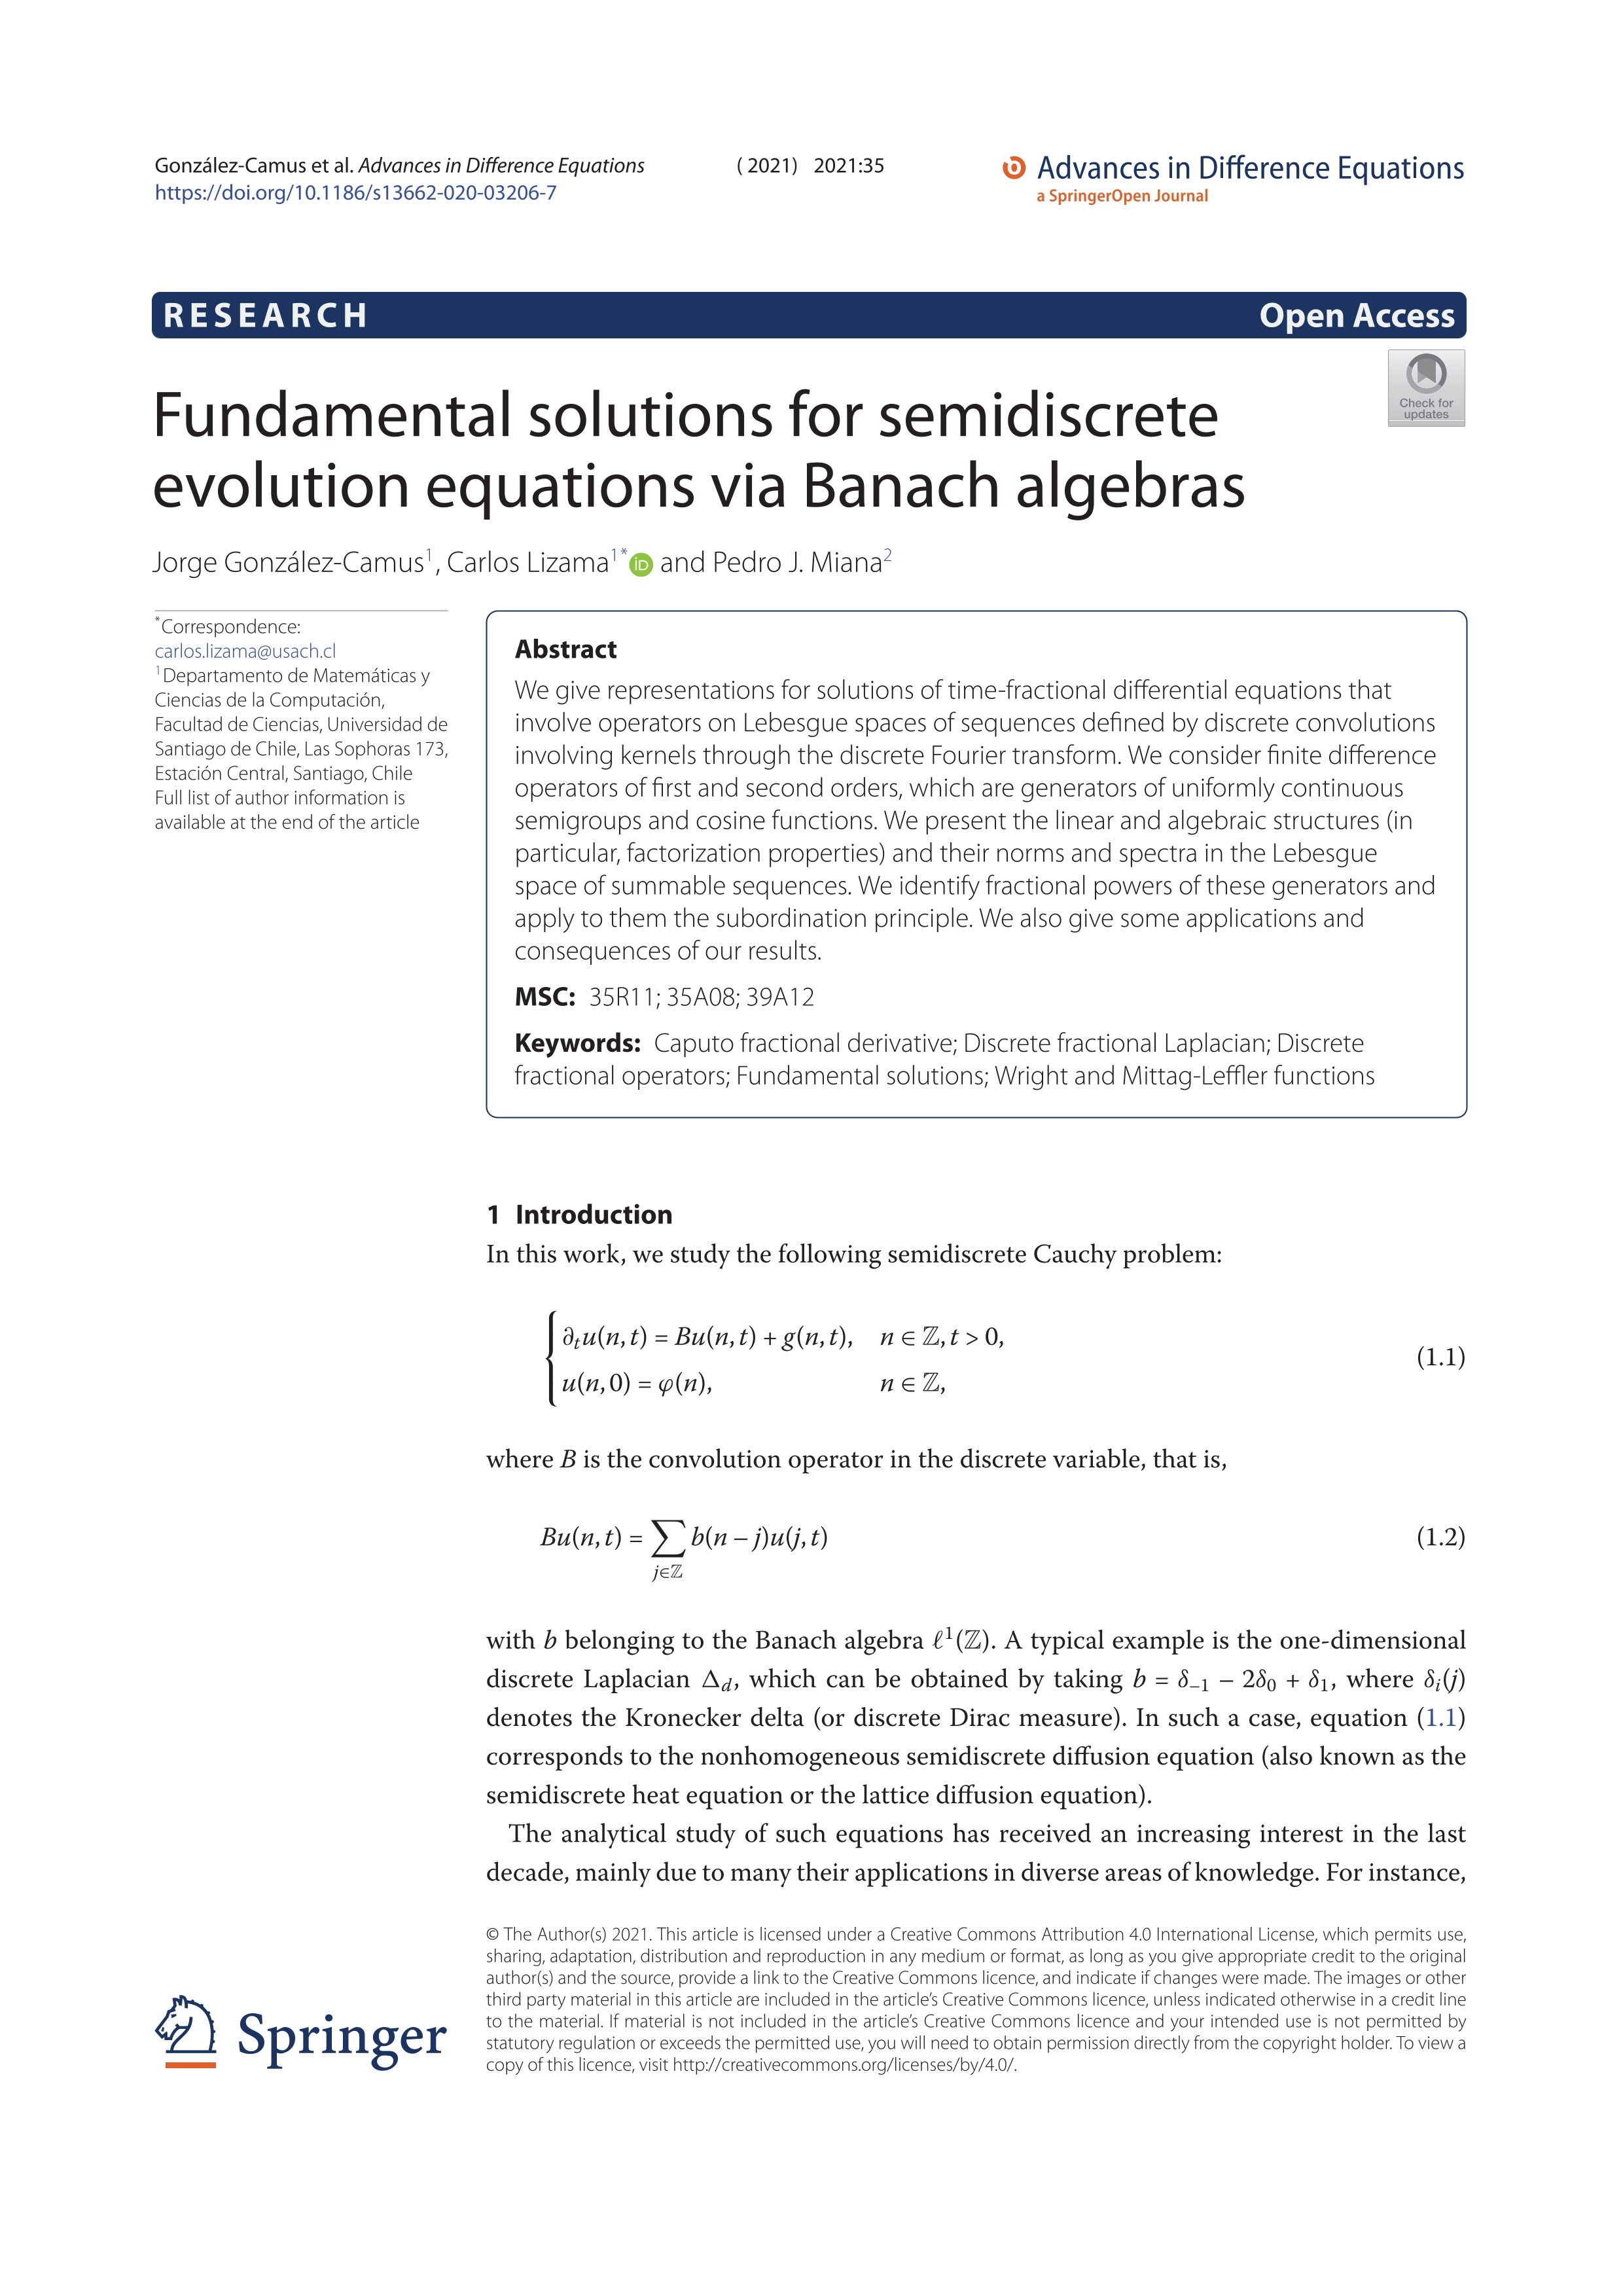 Fundamental solutions for semidiscrete evolution equations via Banach algebras